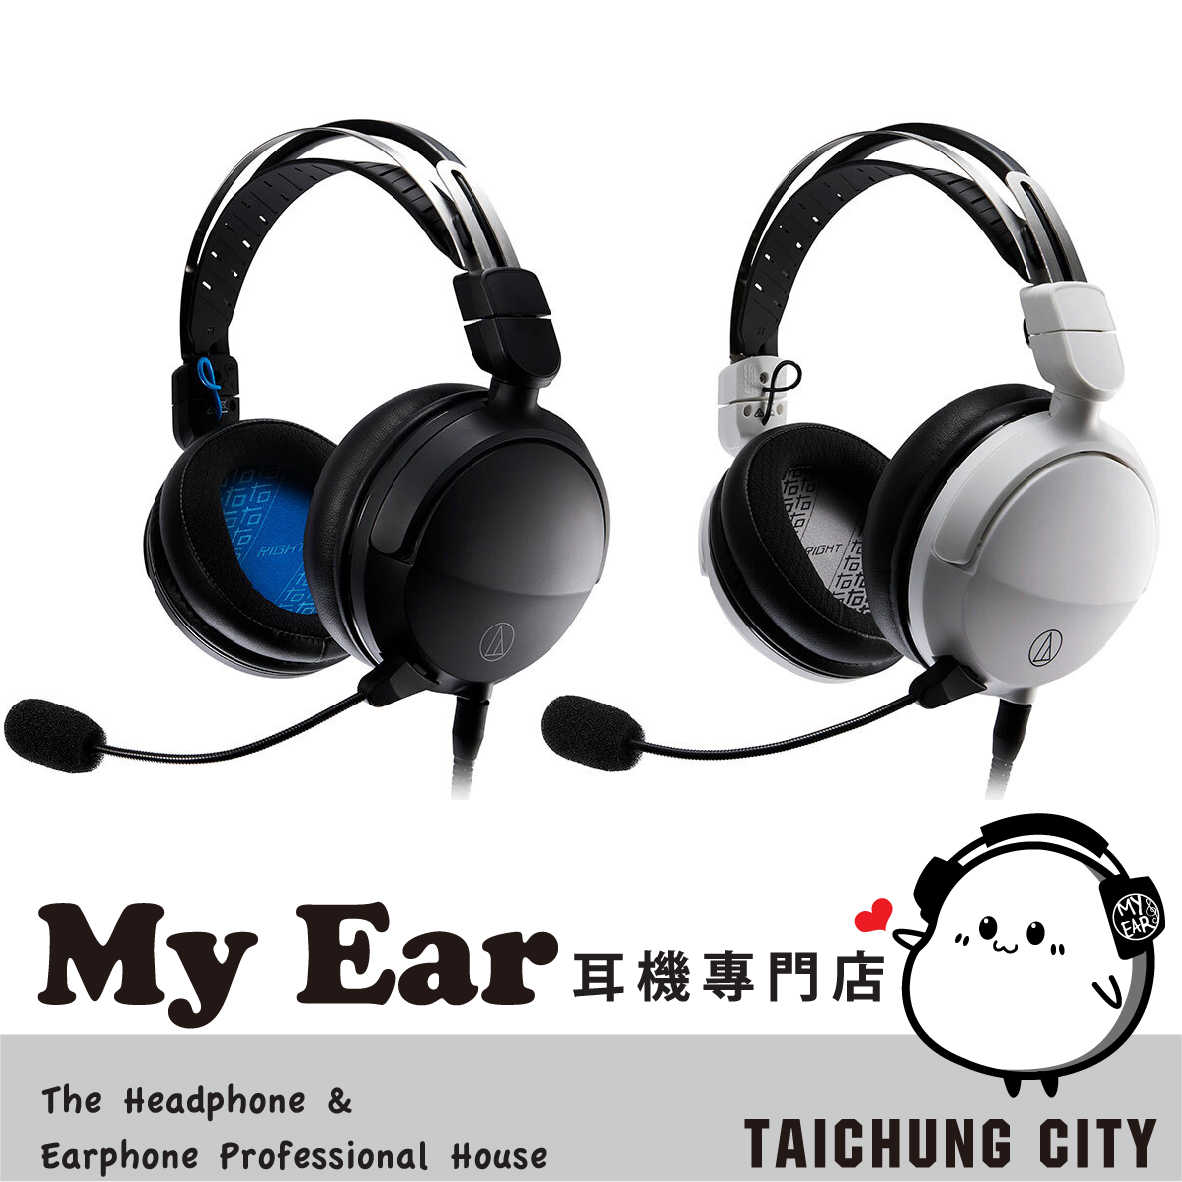 鐵三角 ATH-GL3 黑白兩色 45mm驅動 45Ω 封閉式 電競 耳罩式 耳機 | My Ear 耳機專門店